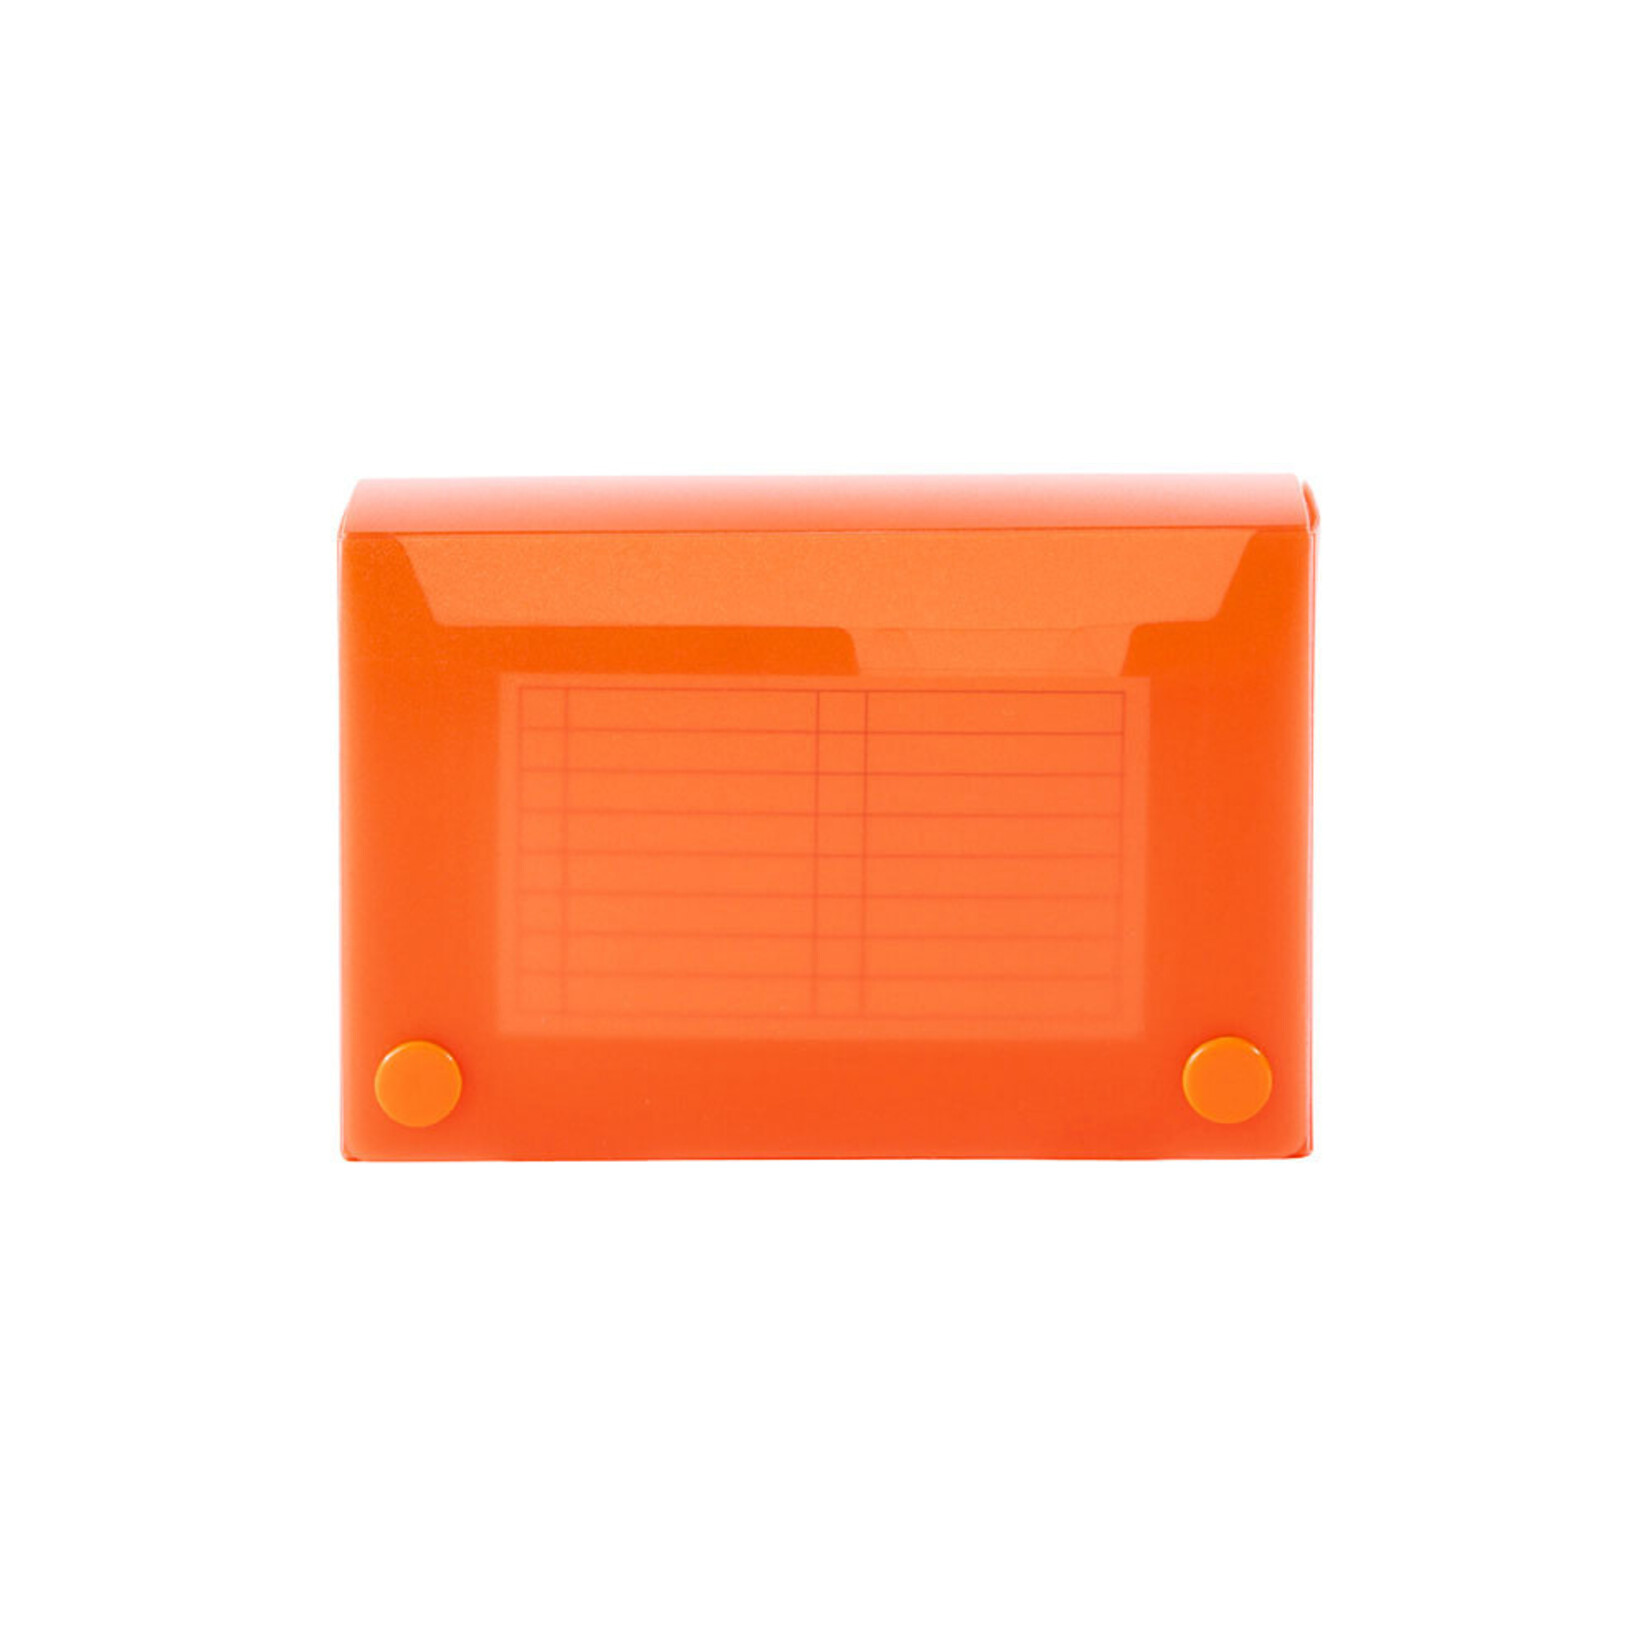 Filexec Index Card Case 5.25X3.5 Tangerine